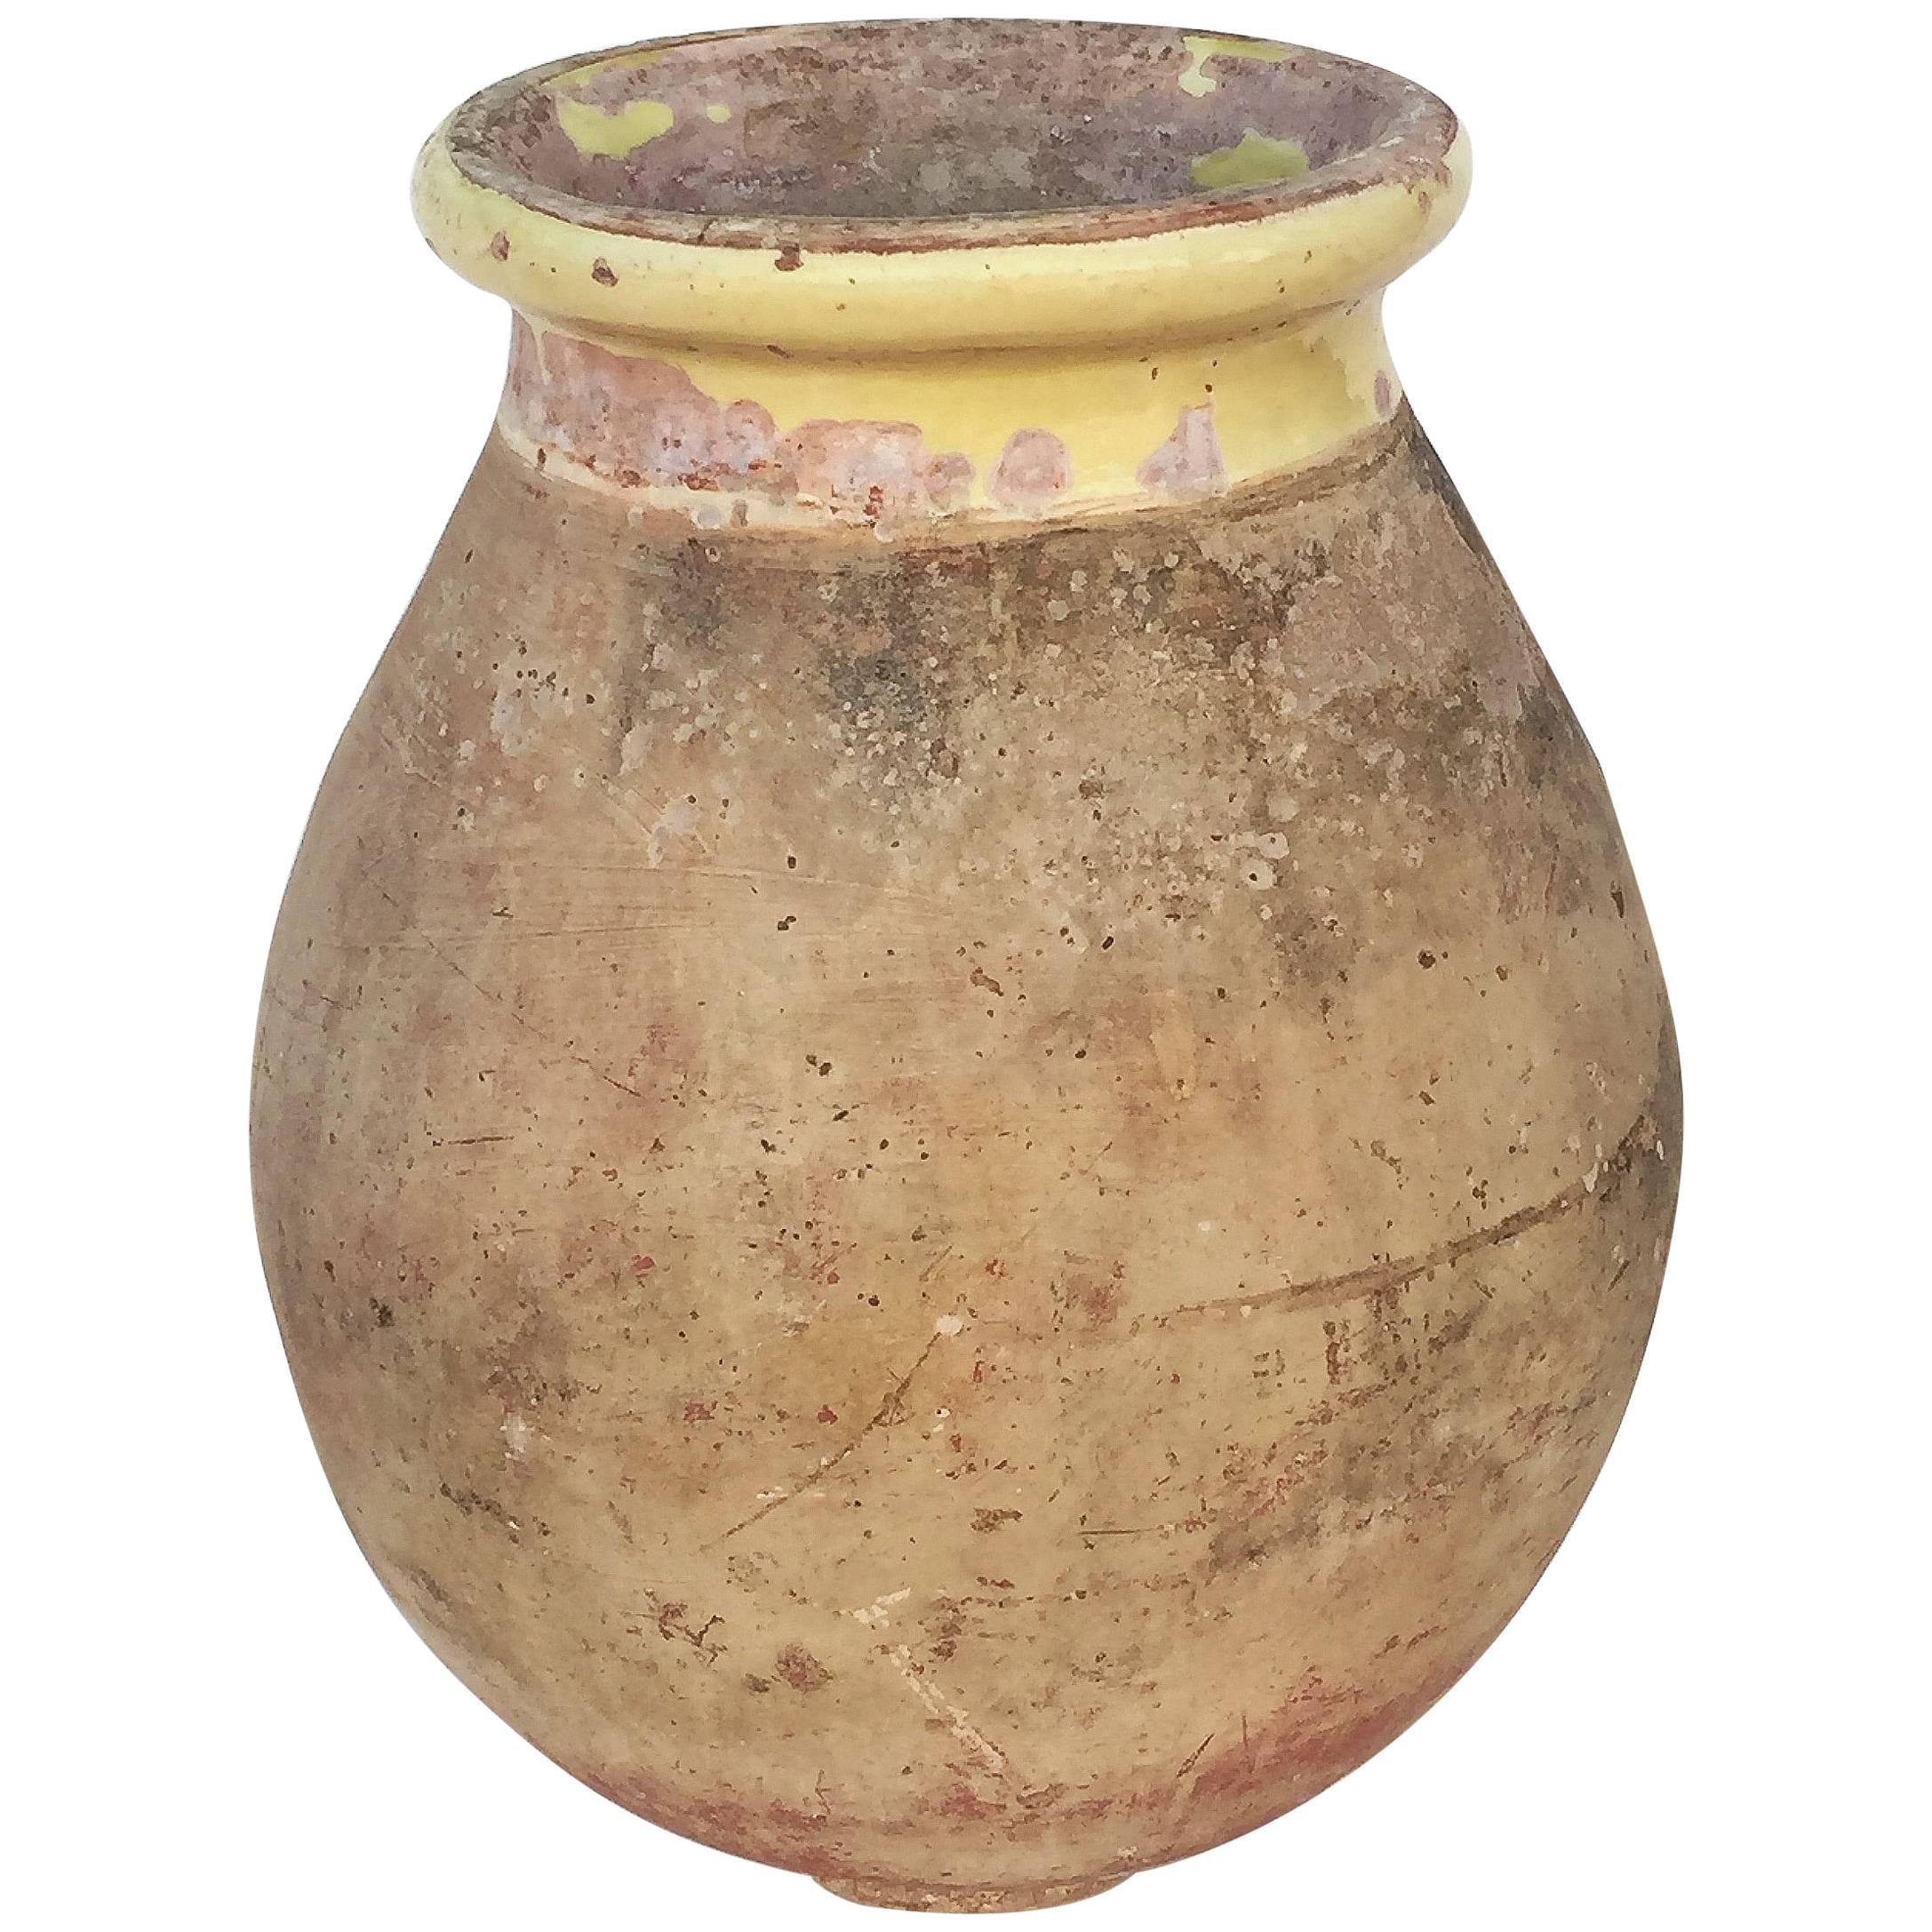 Large Biot Garden Urn or Oil Jar from France